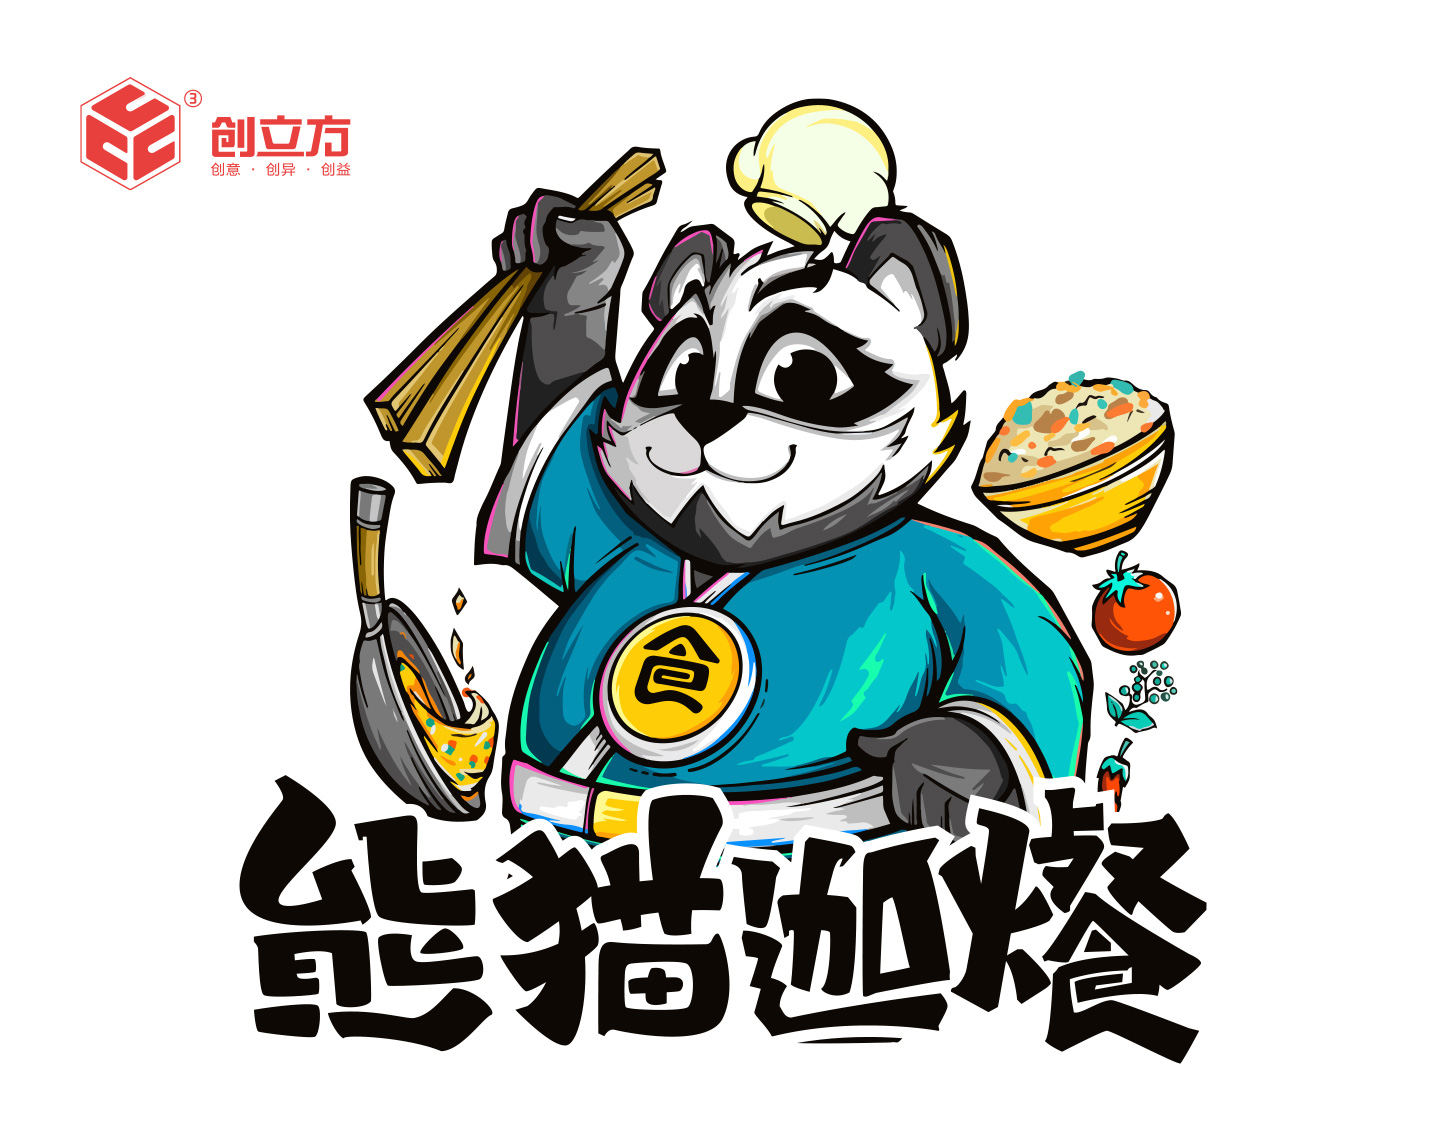 熊猫迦爘卡通形象设计